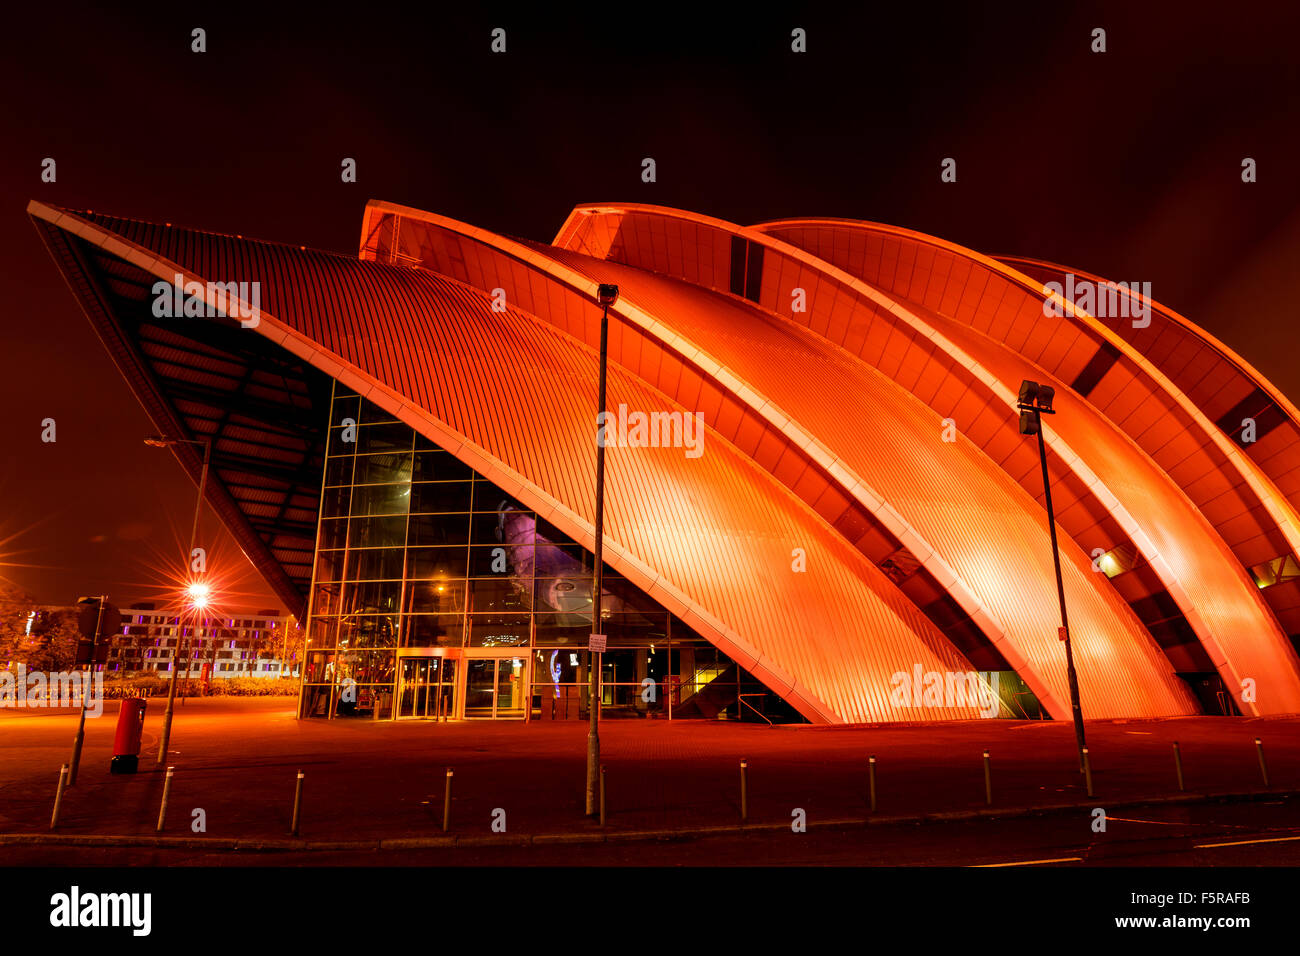 GLASGOW, Escocia. El 27 de octubre de 2015 : El Clyde Auditorium (armadillo) Concert Hall sobre las orillas del río Clyde, Glasgow, Escocia Foto de stock